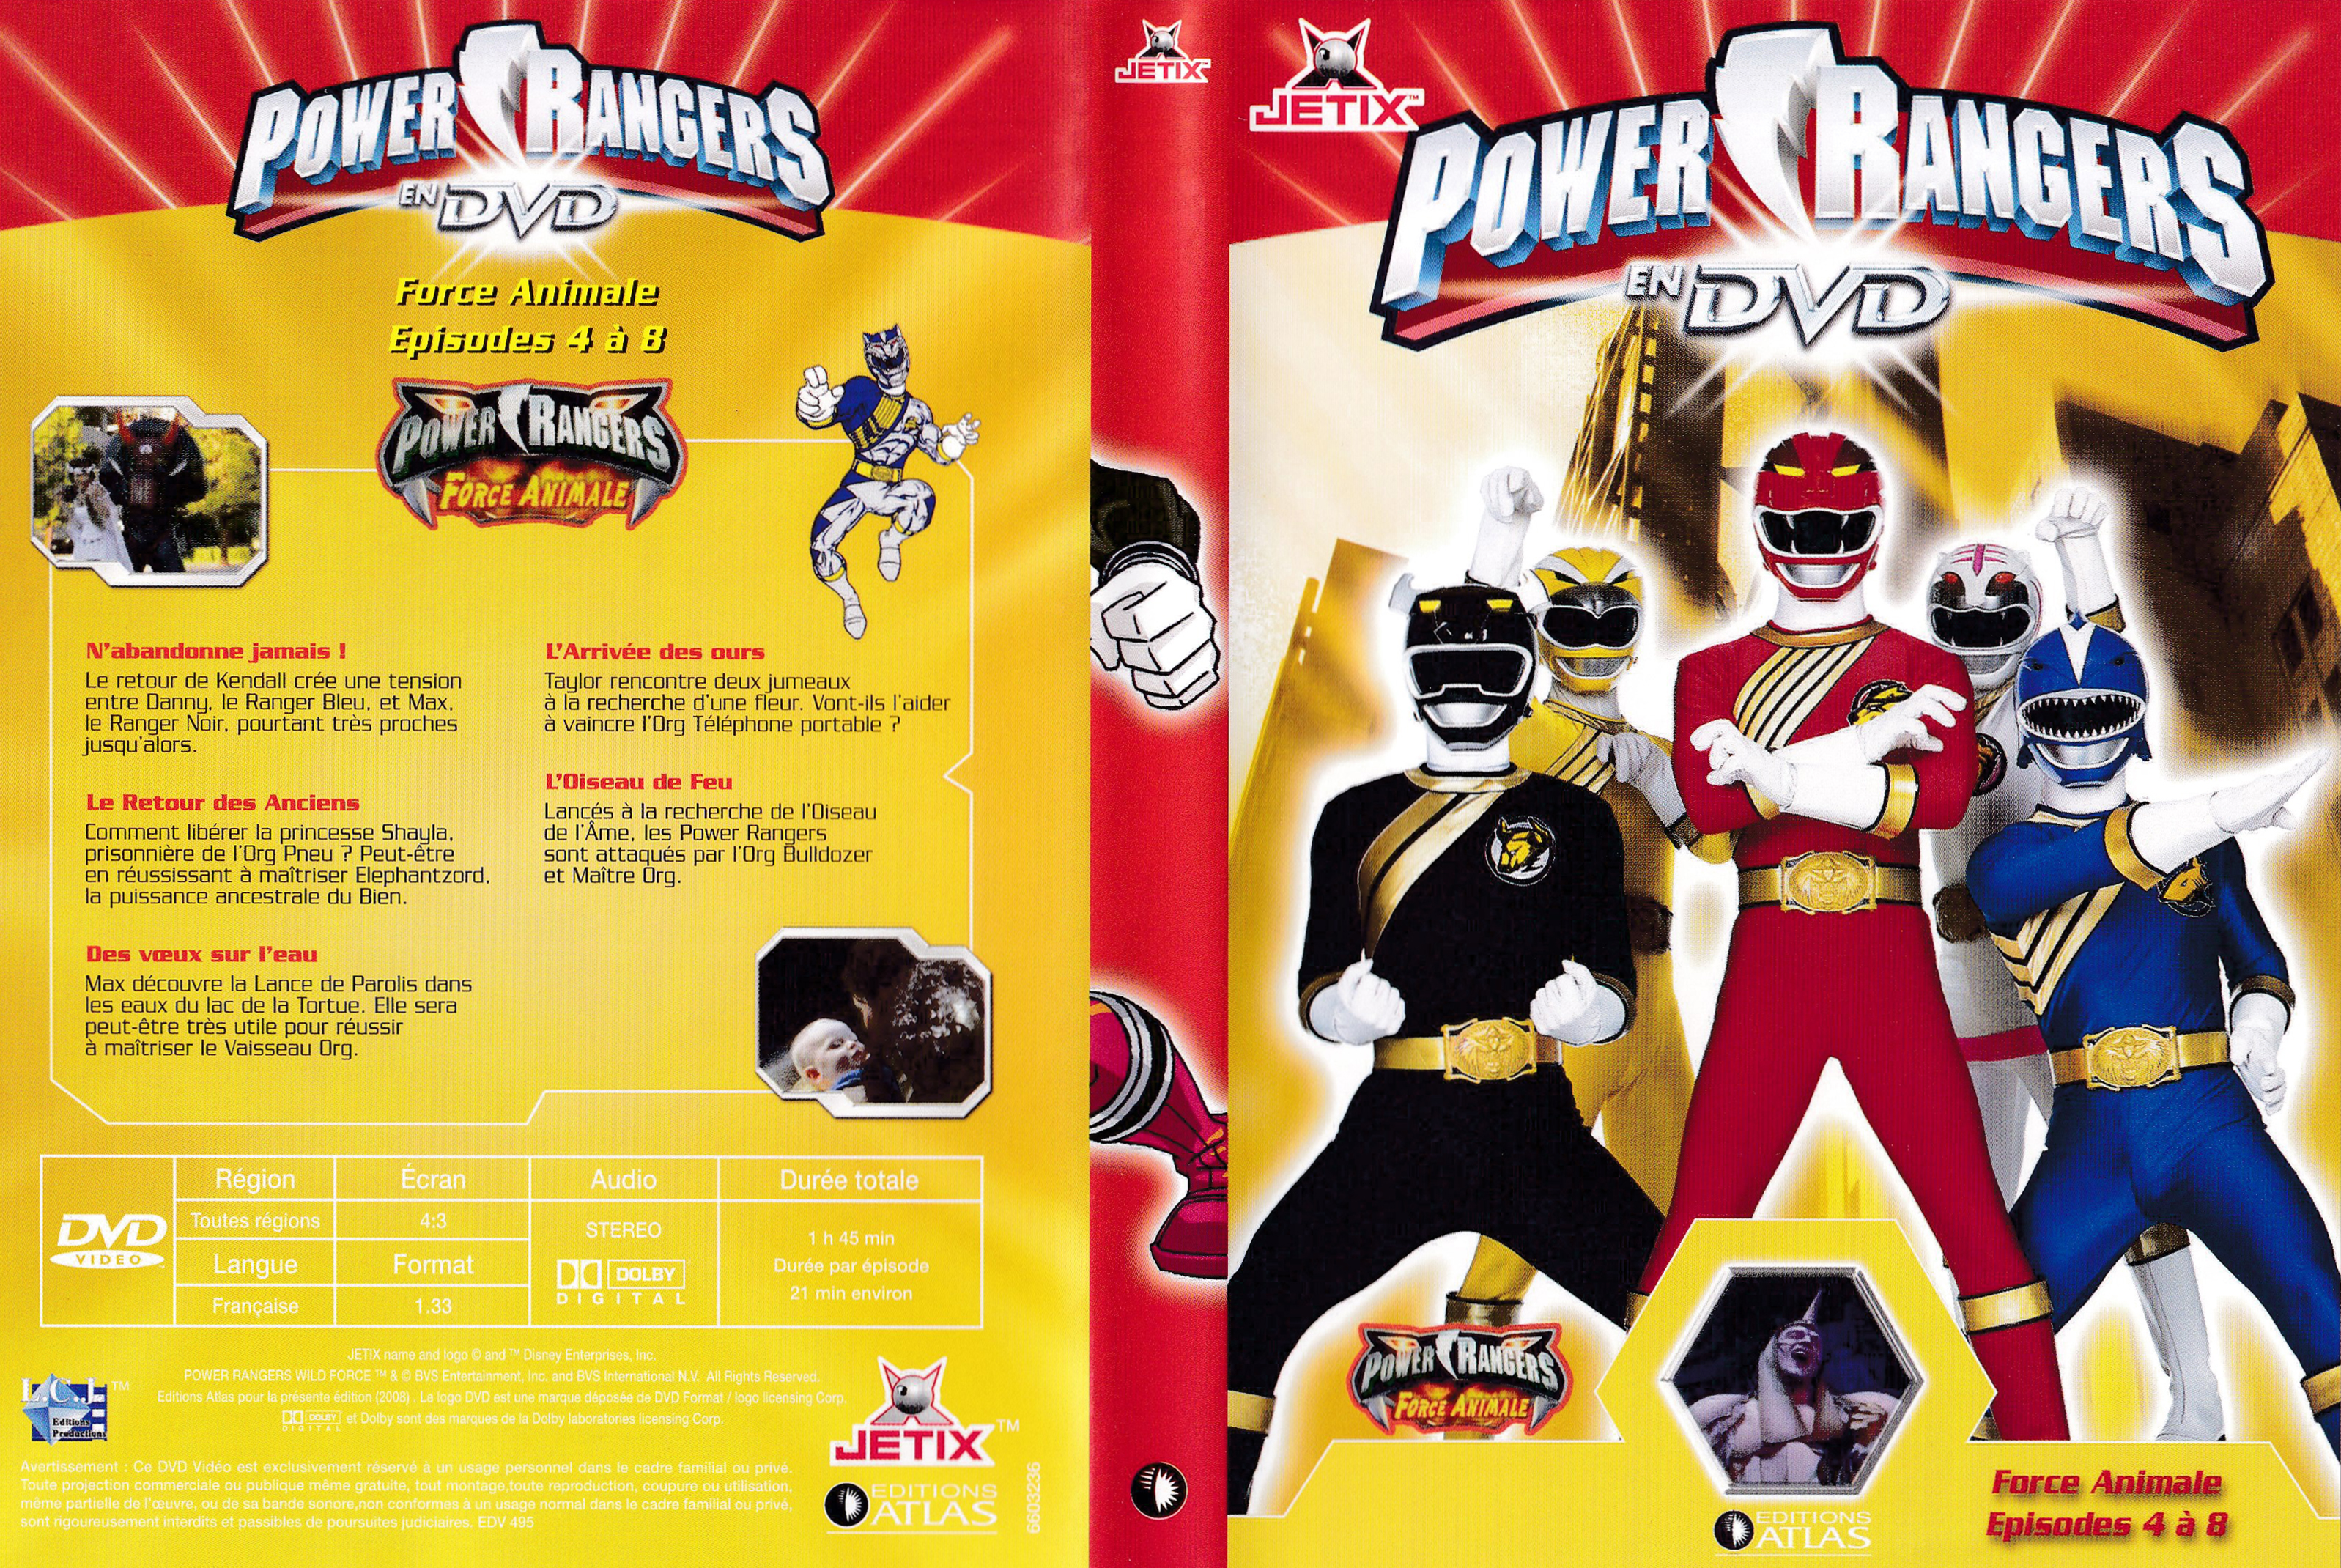 Power Rangers en DVD n°36